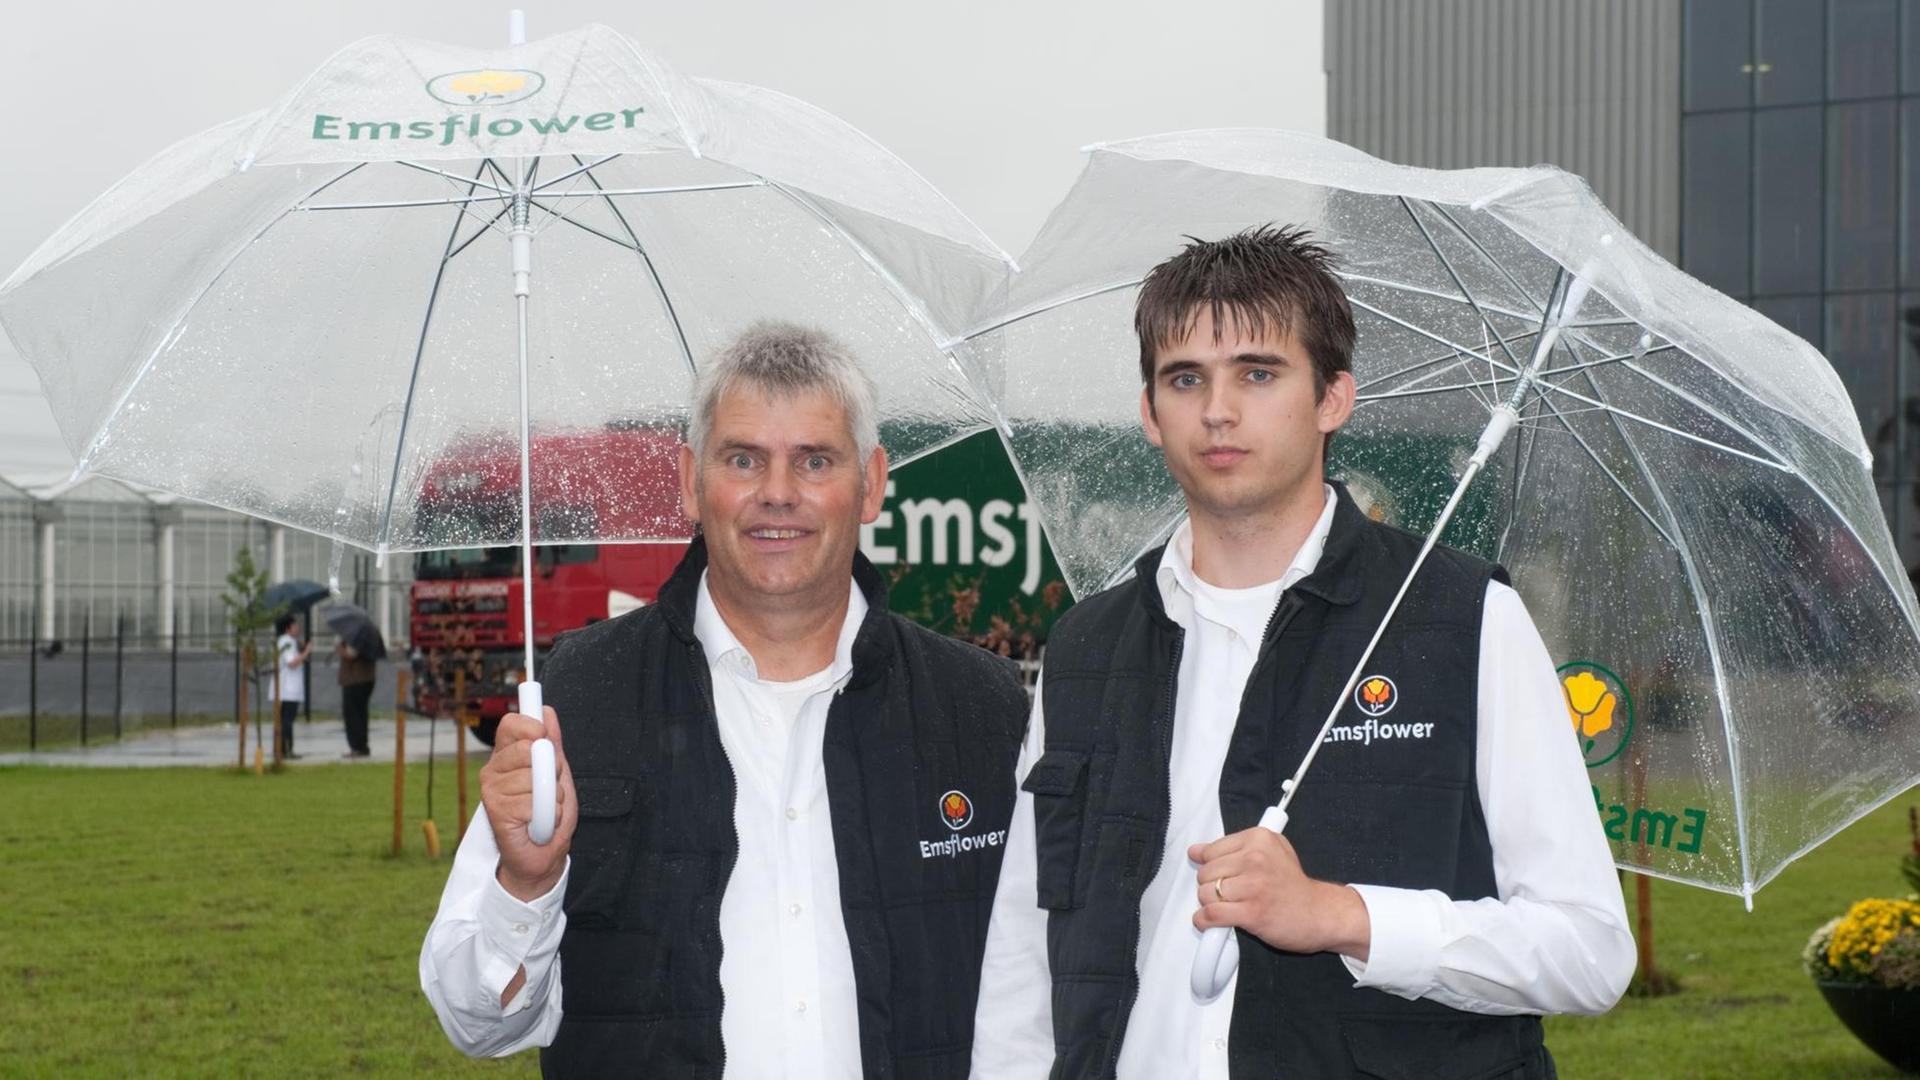 Die Inhaber der Gartenbaufirma Emsflower, Bennie Kuipers (r) und sein Sohn und mitinhaber Tom Kuipers, aufgenommen am Donnerstag (26.08.2010) in ihrem Betrieb in Emsbüren.